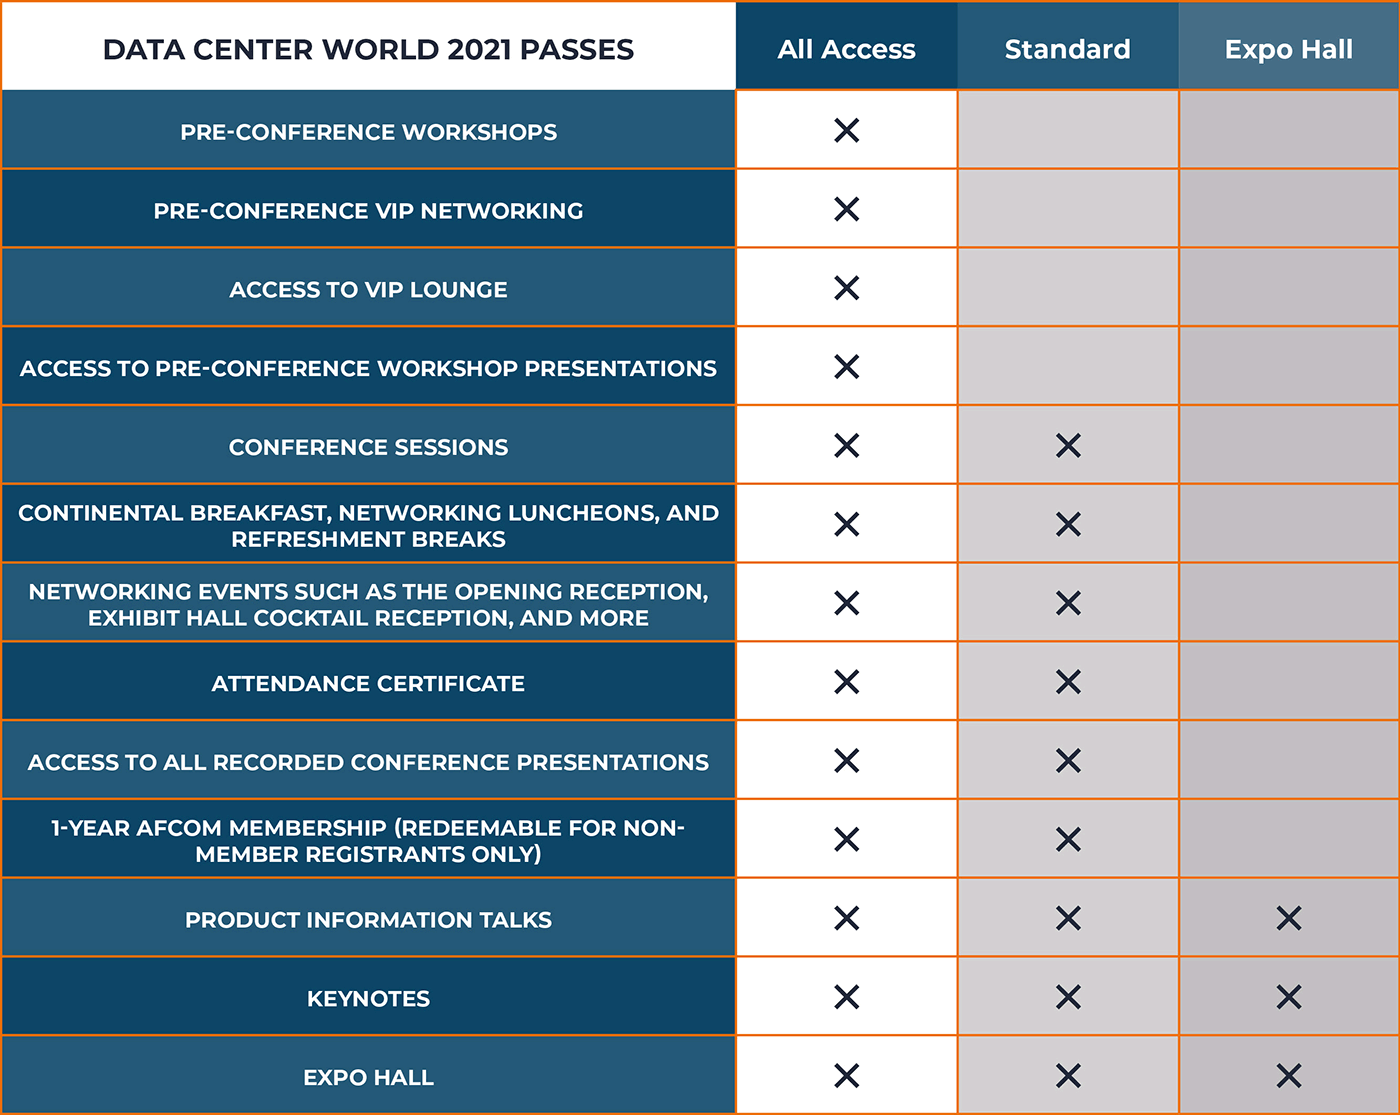 Data Center World 2021 Pass Benefits